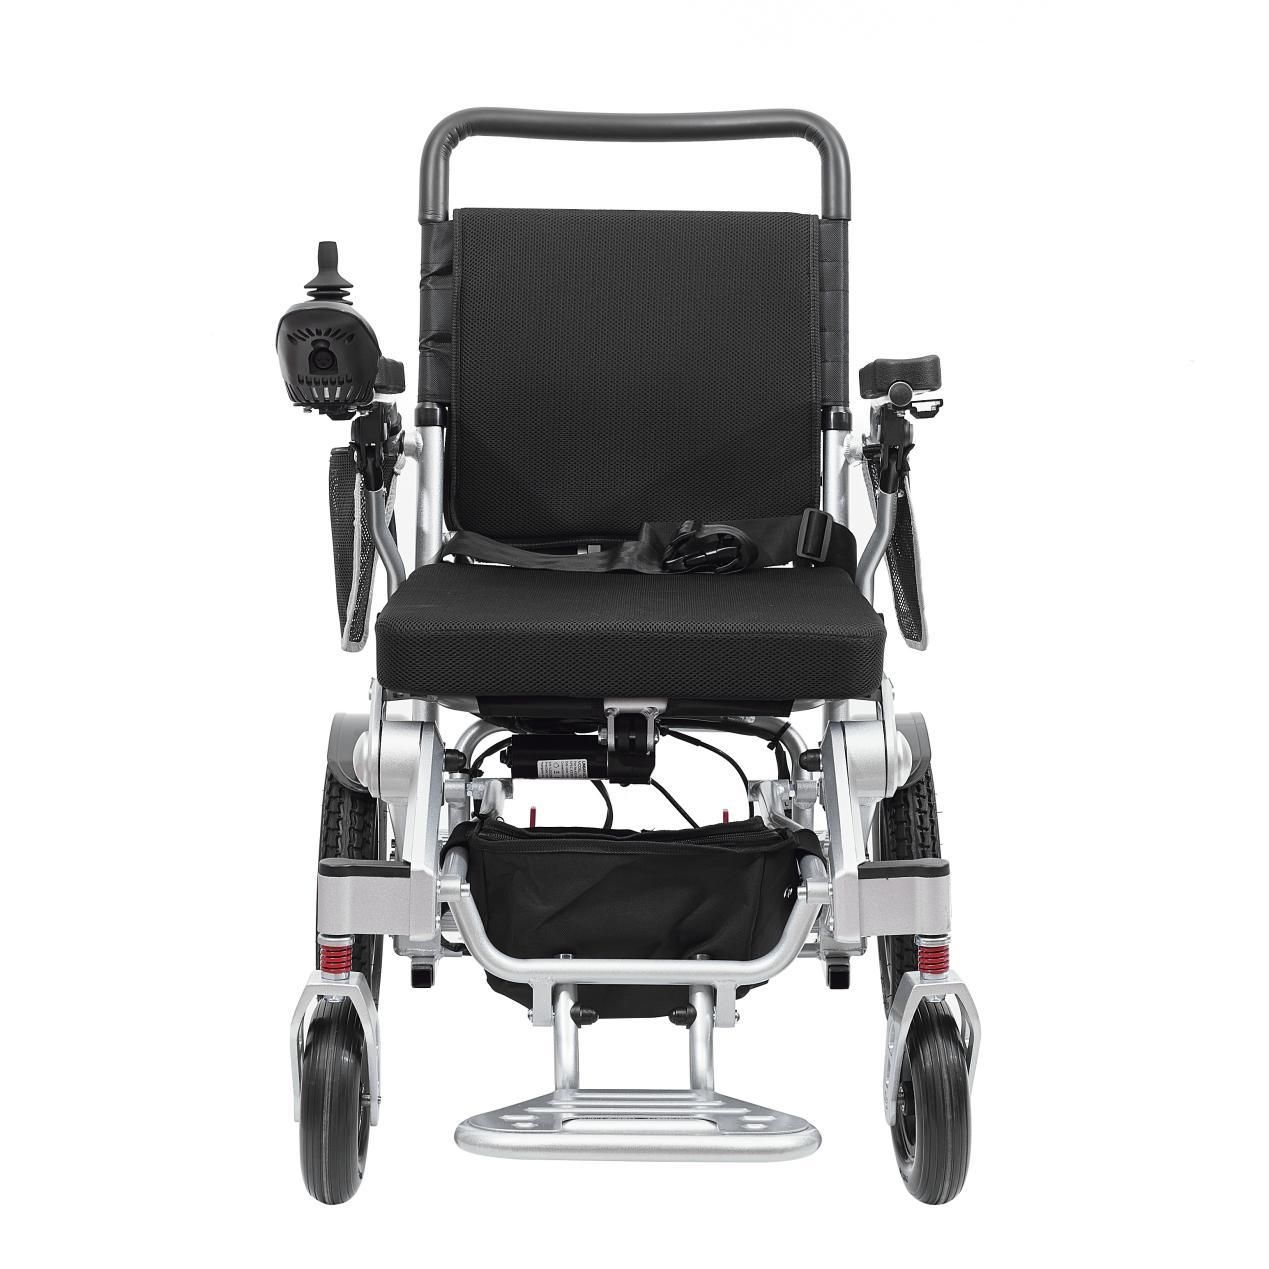 Katere metode vzdrževanja lahko podaljšajo življenjsko dobo invalidskega vozička iz aluminijeve zlitine